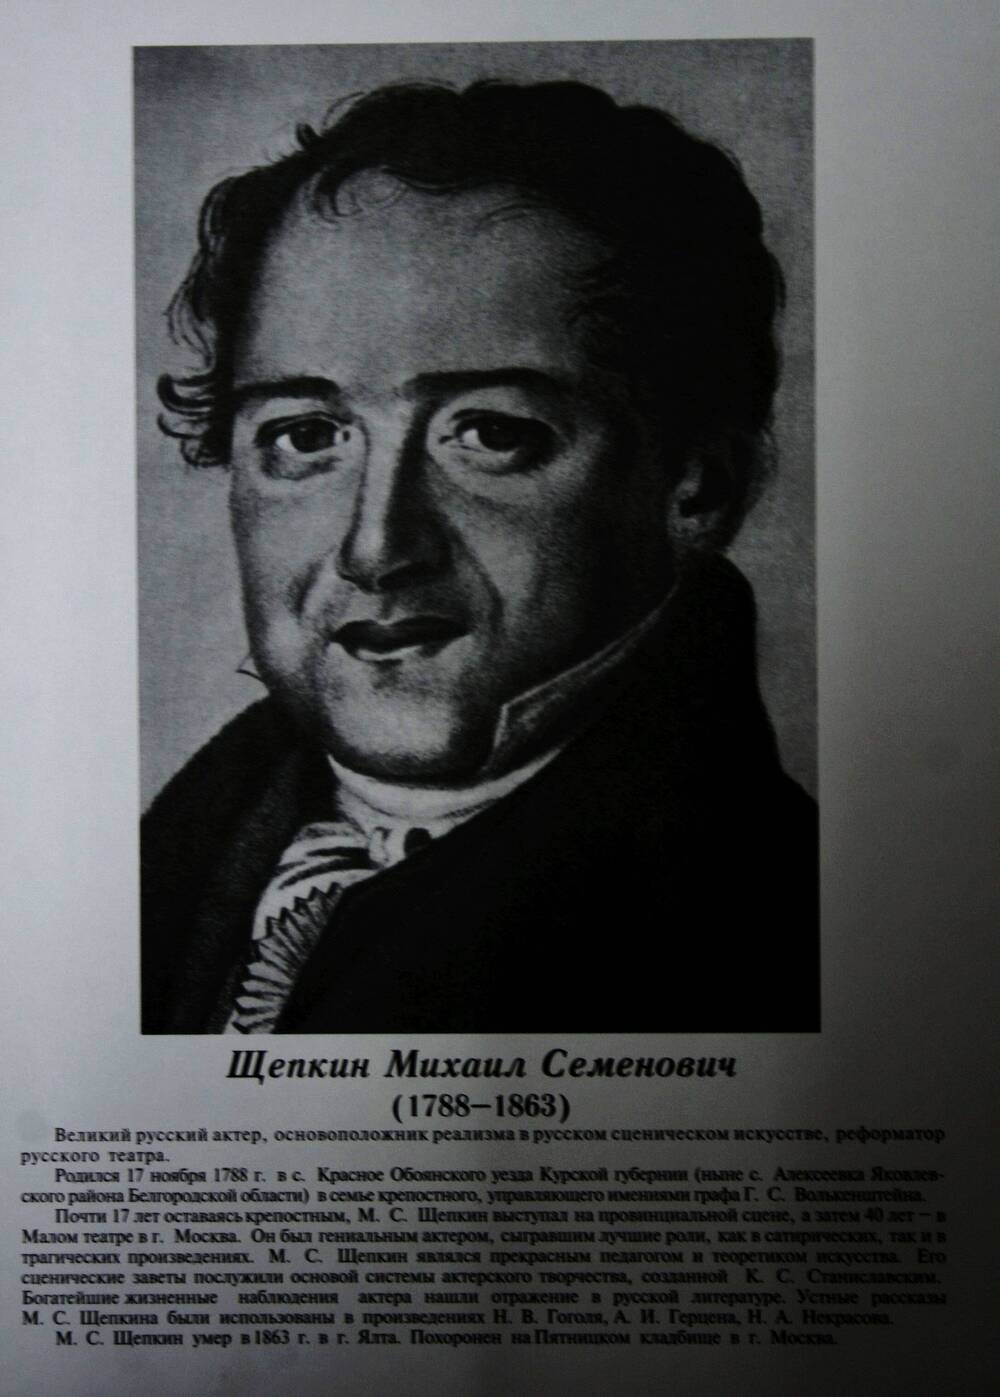 Плакат (фотопортрет) из комплекта Галерея славных имен Белгородчины. Щепкин Михаил Семенович (1788-1863).